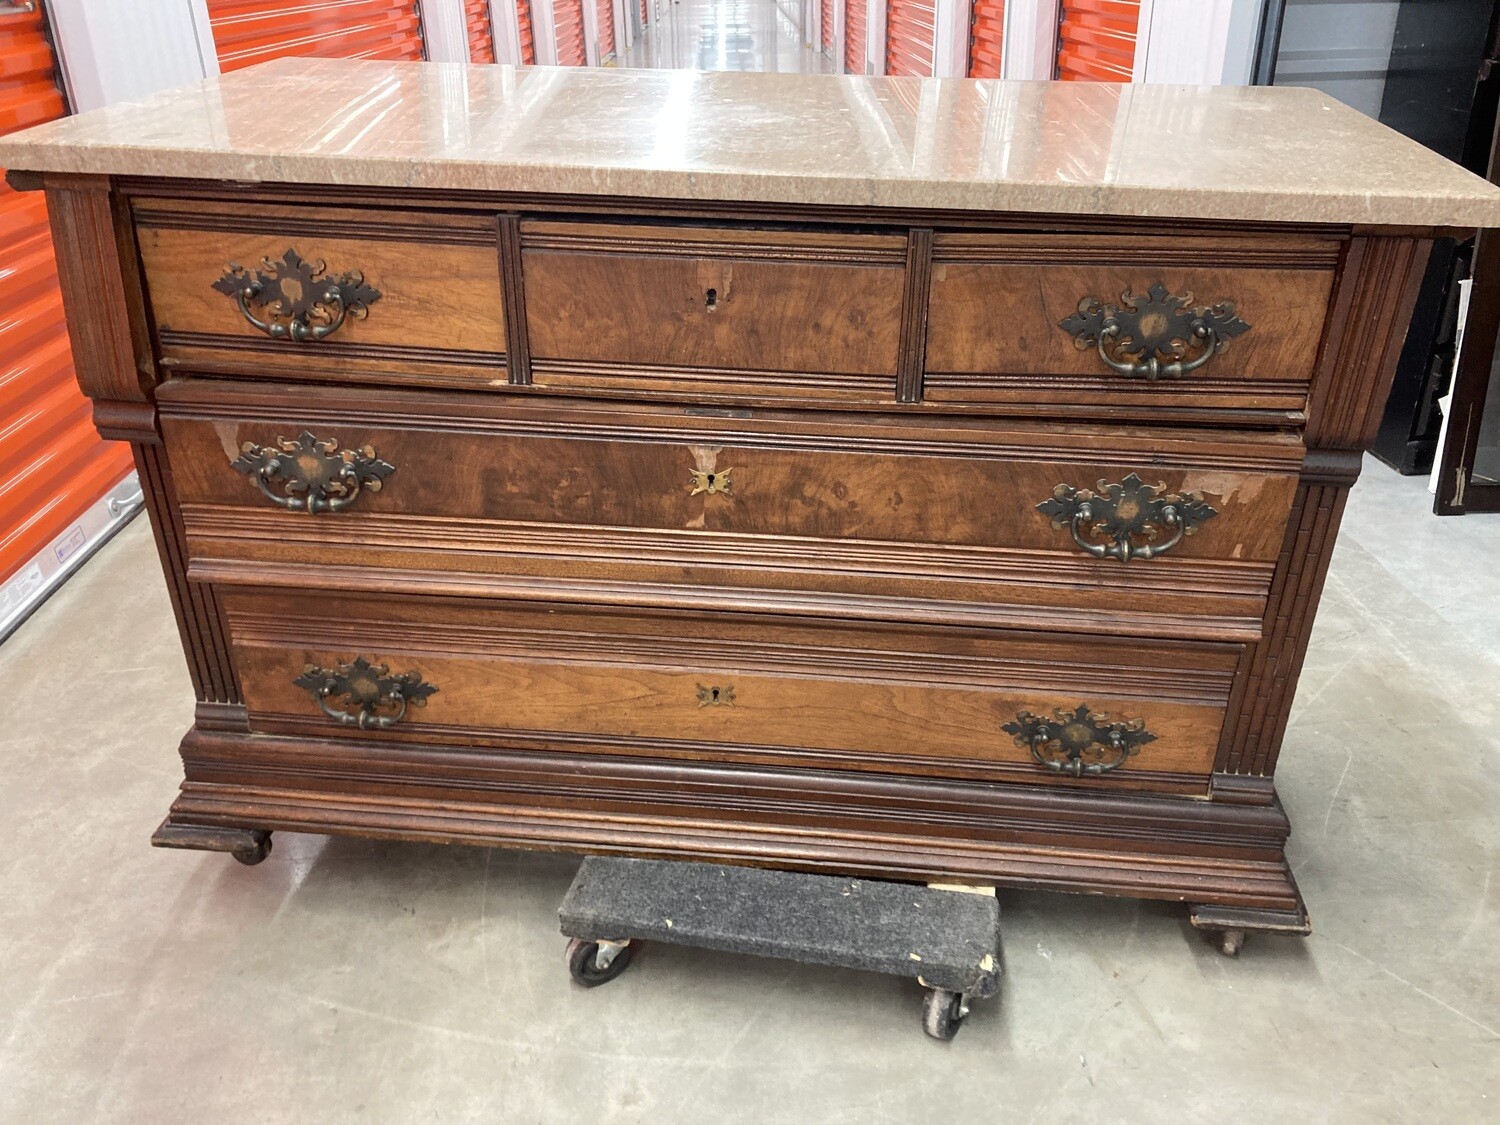 Antique Dresser / Sideboard, granite top, needs love! #2118